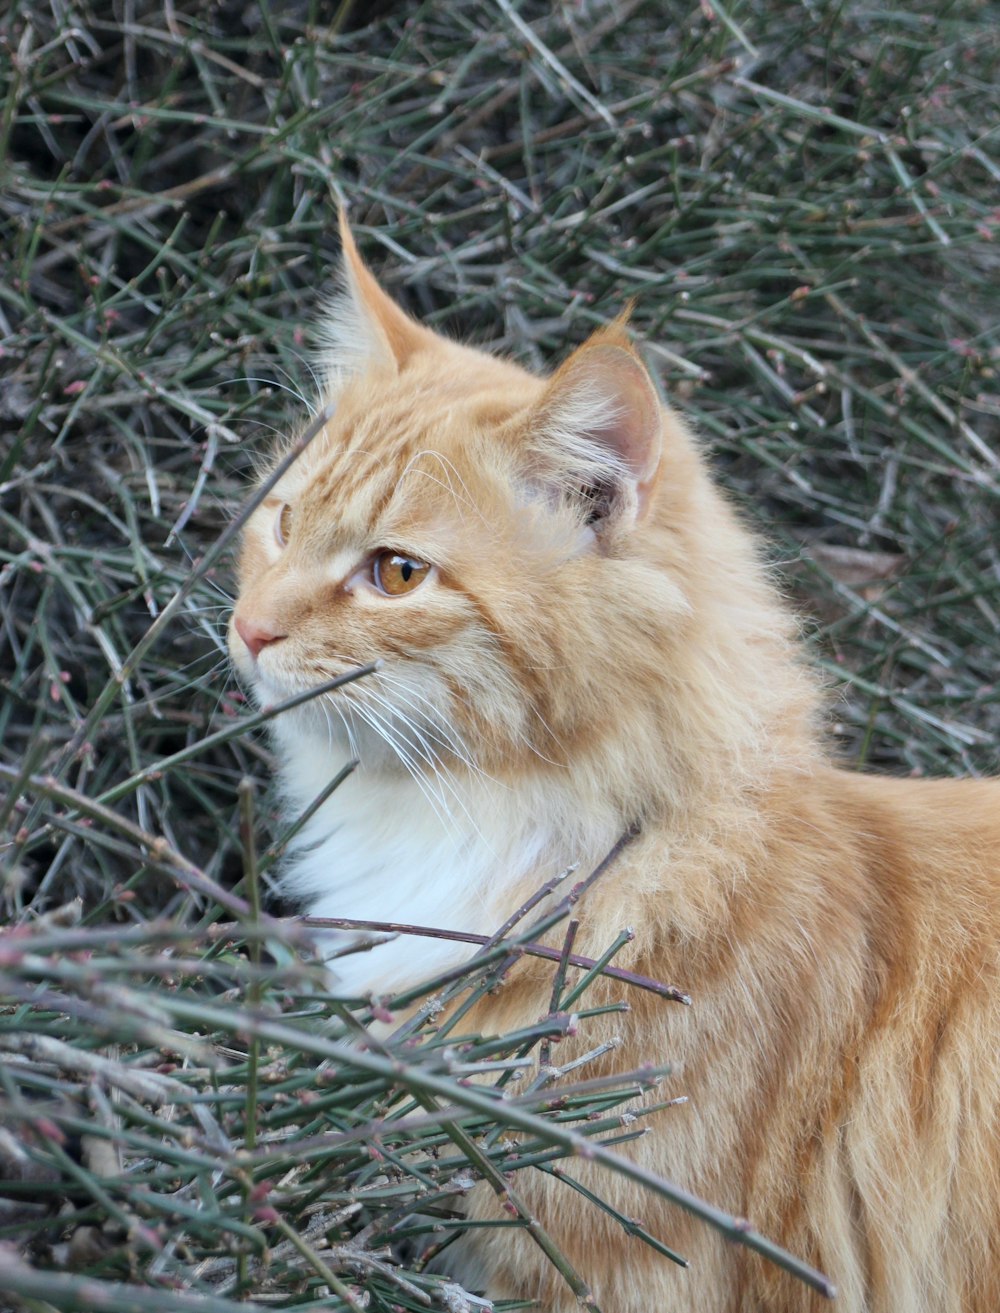 an orange cat is sitting in a bush